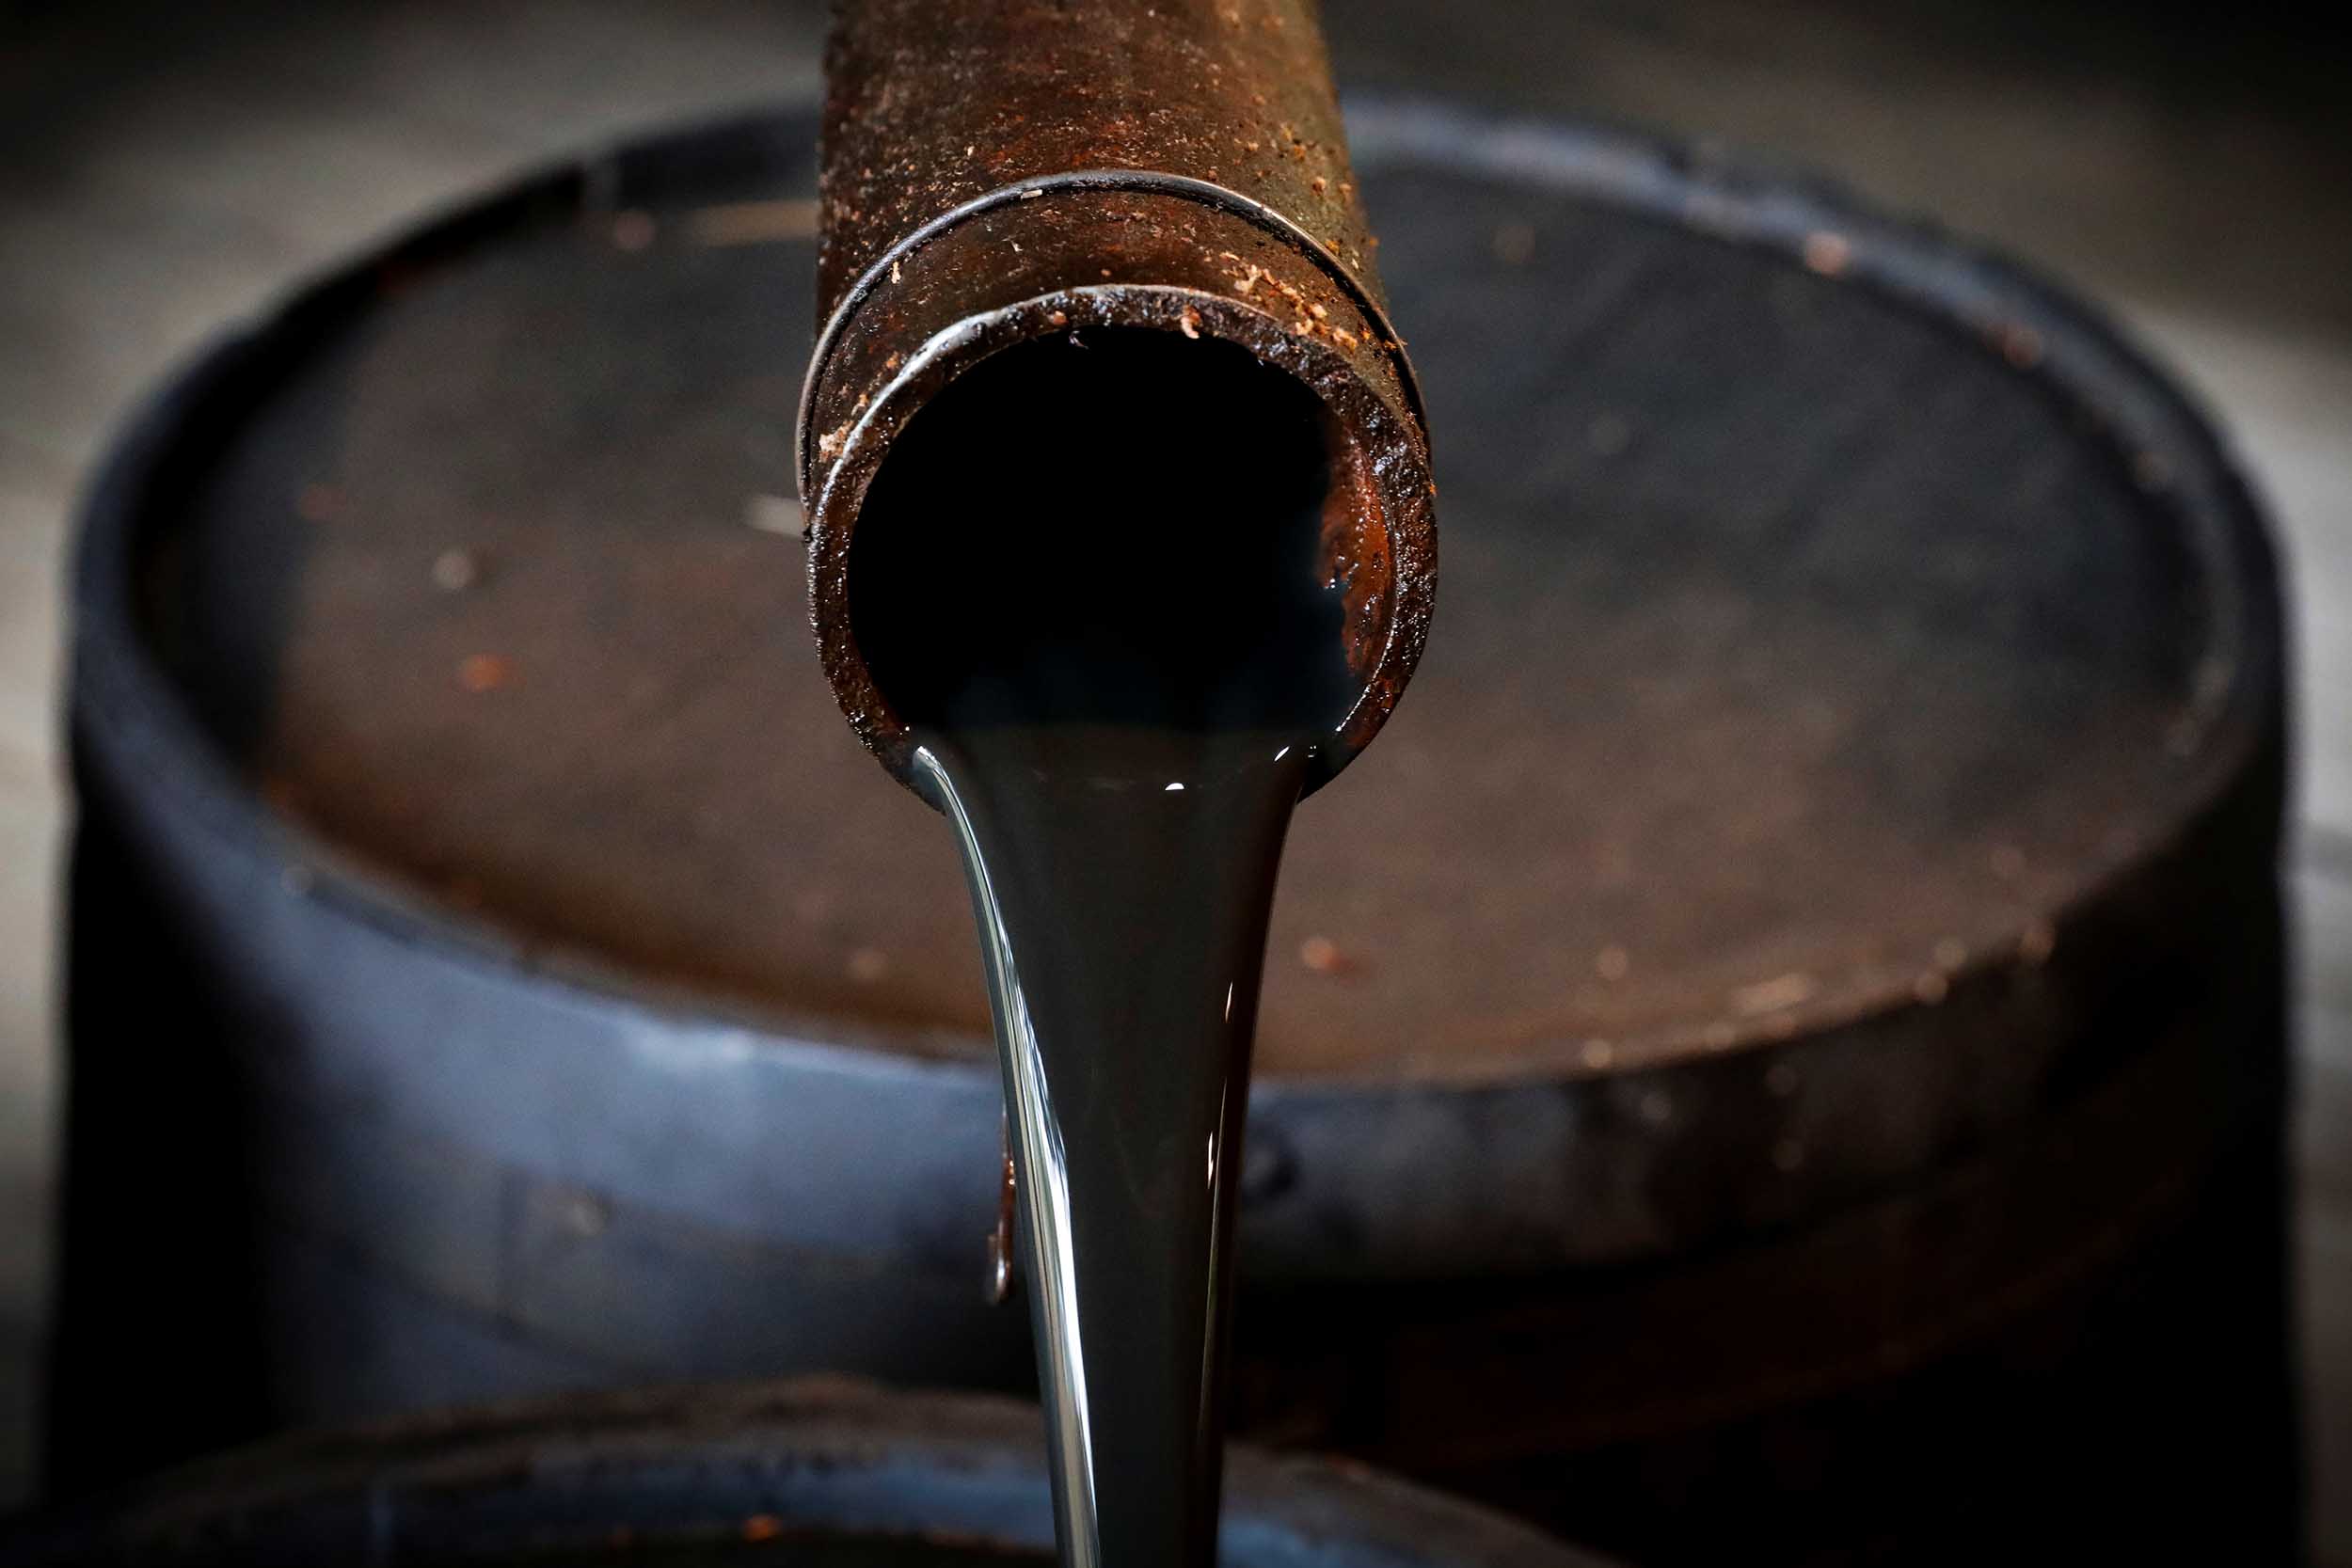 النفط يرتفع مع عودة التوتر في الشرق الأوسط مطلع الأسبوع